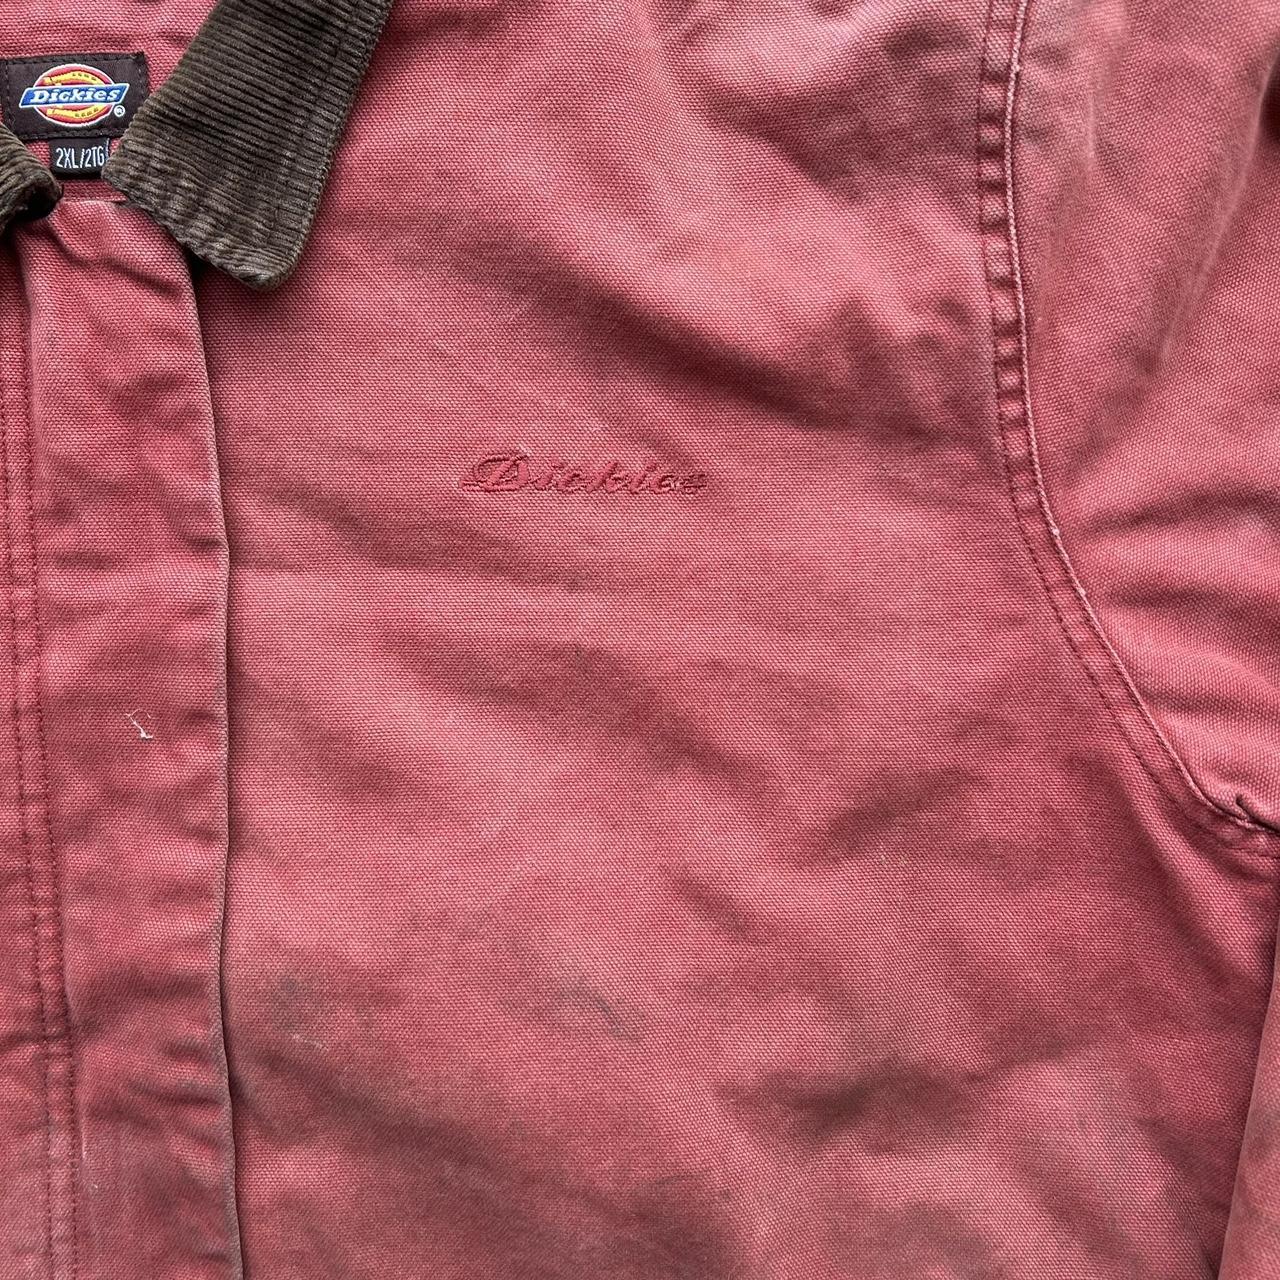 Vintage Dickies Detroit jacket Obvious flaws... - Depop